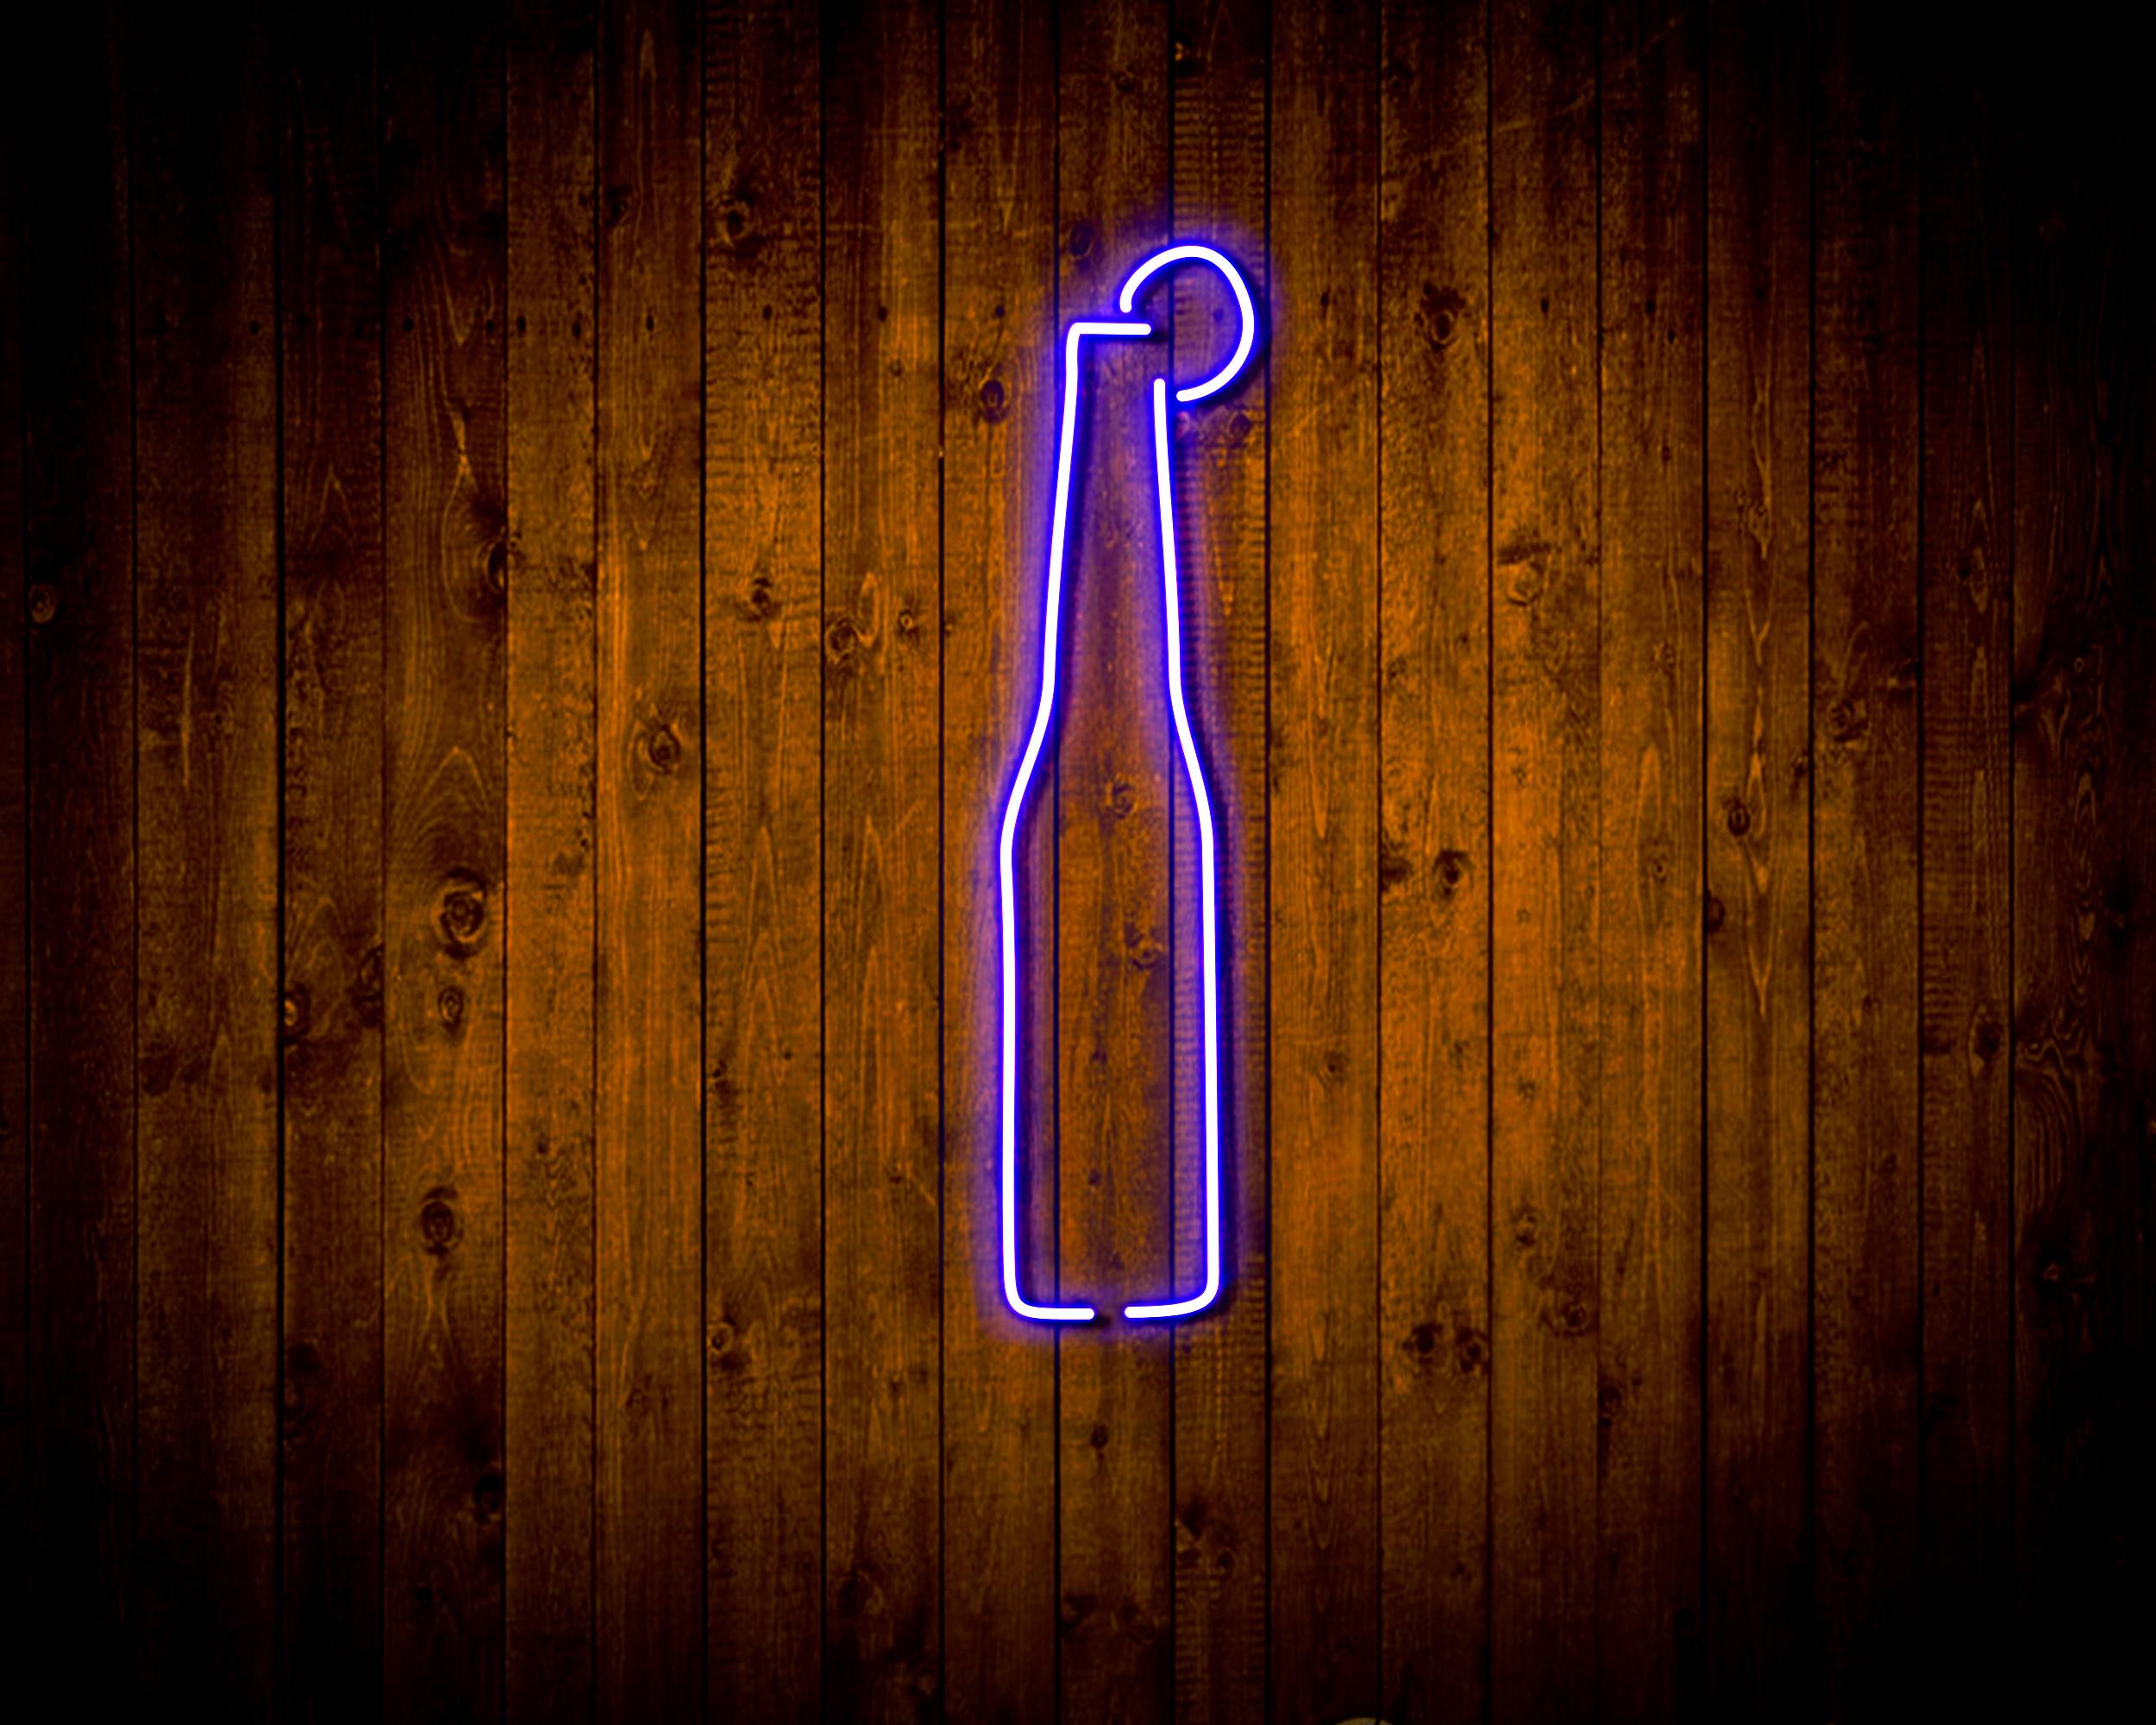 Beer Bottle for Corona Handmade Neon Flex LED Sign